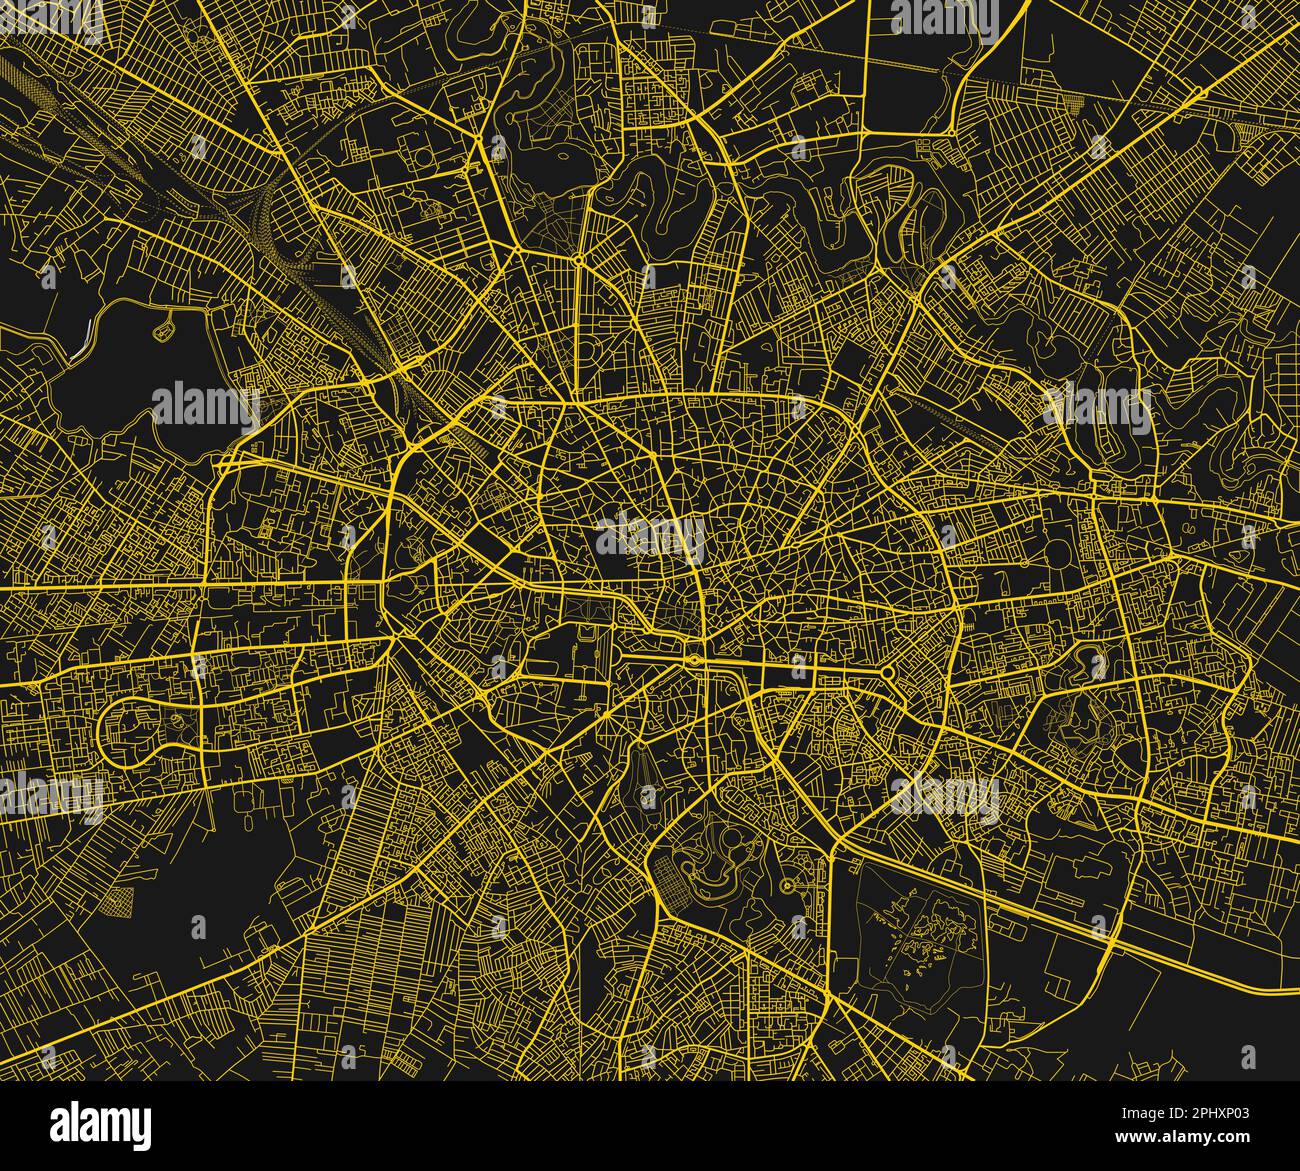 Schwarzer und gelber Vektorplan von Bukarest mit gut organisierten getrennten Schichten. Stock Vektor